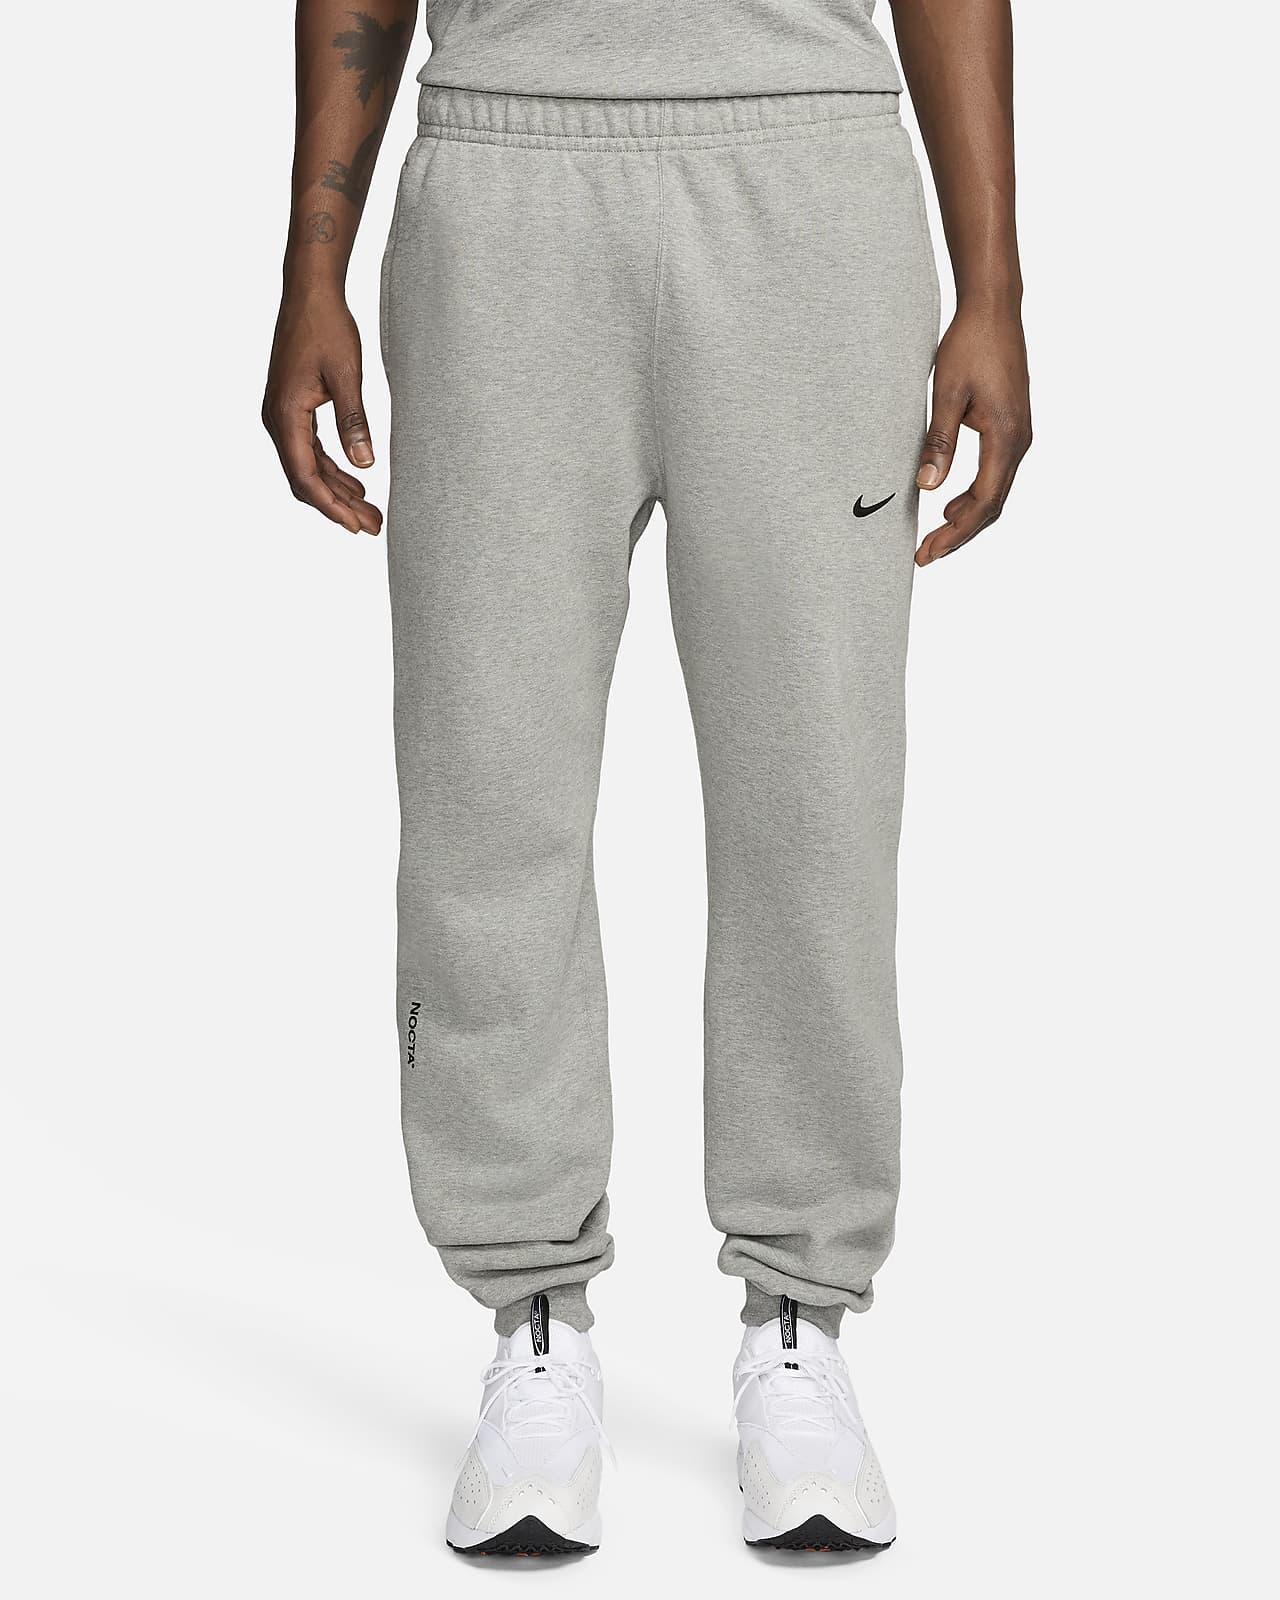 Buy Nike x NOCTA Fleece Basketball Pants 'Grey' - DX2839 063